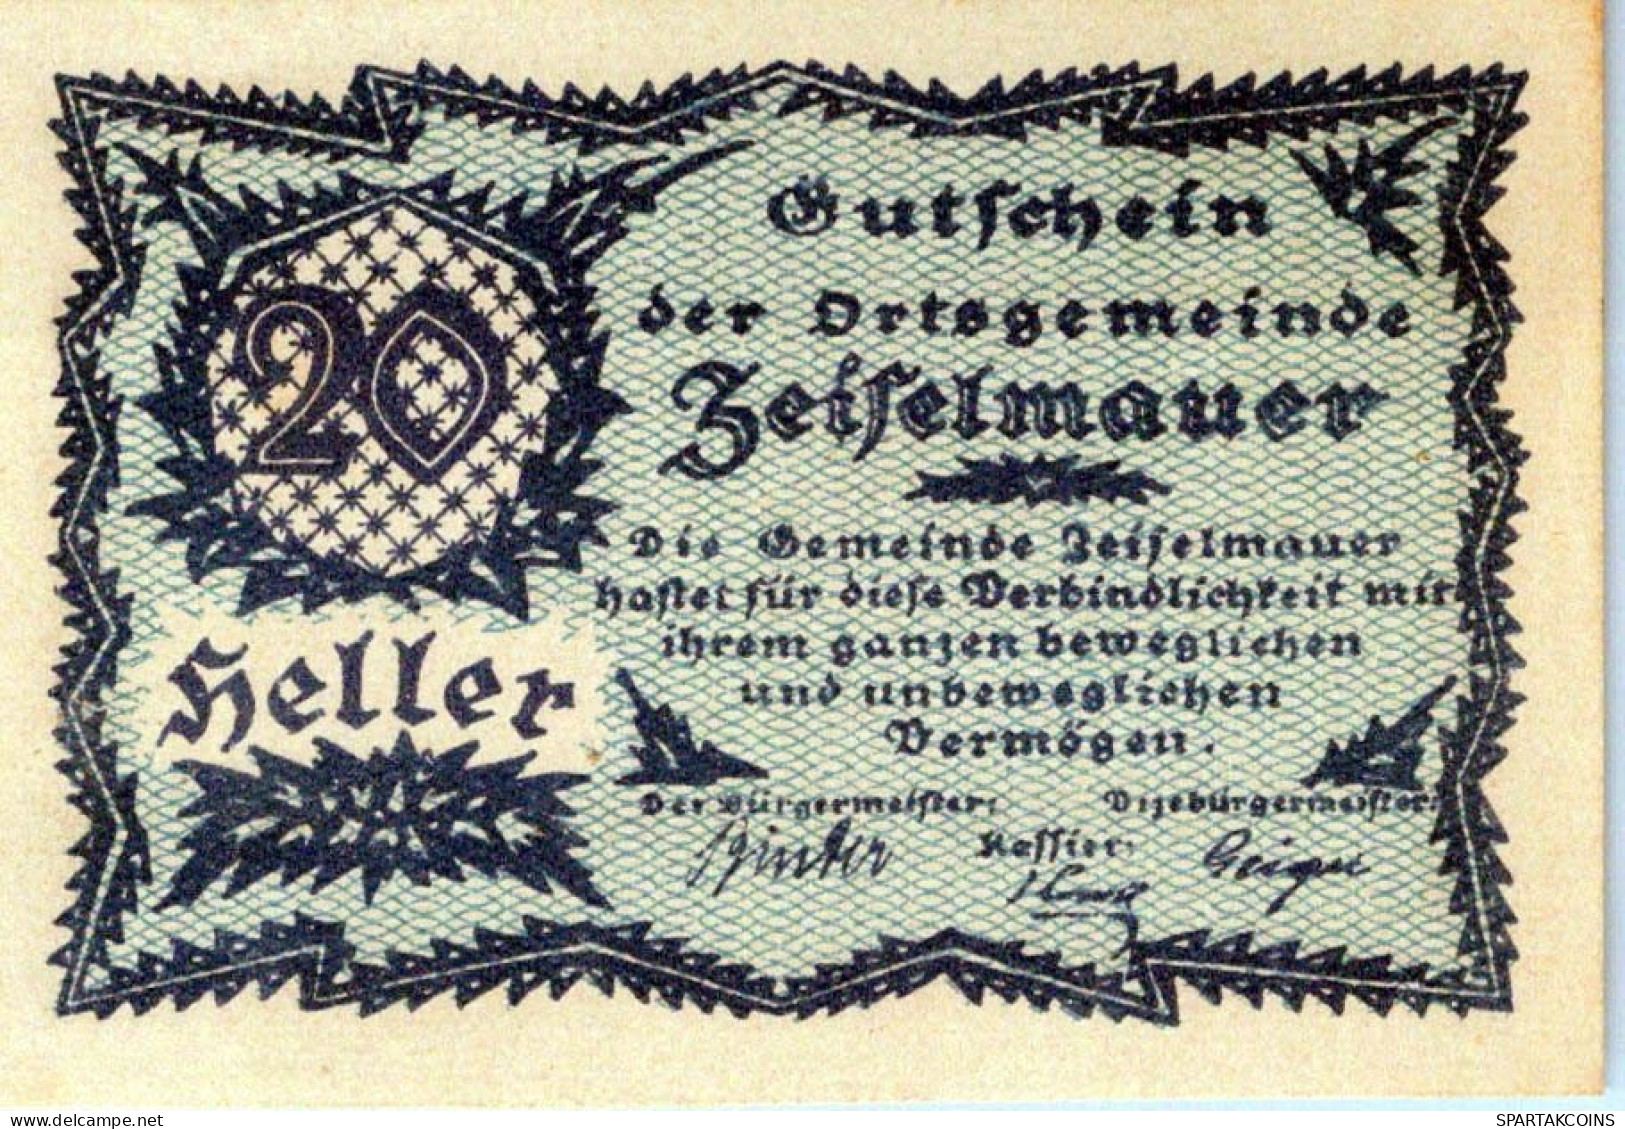 20 HELLER 1920 Stadt ZEISELMAUER Niedrigeren Österreich Notgeld Papiergeld Banknote #PG754 - [11] Lokale Uitgaven